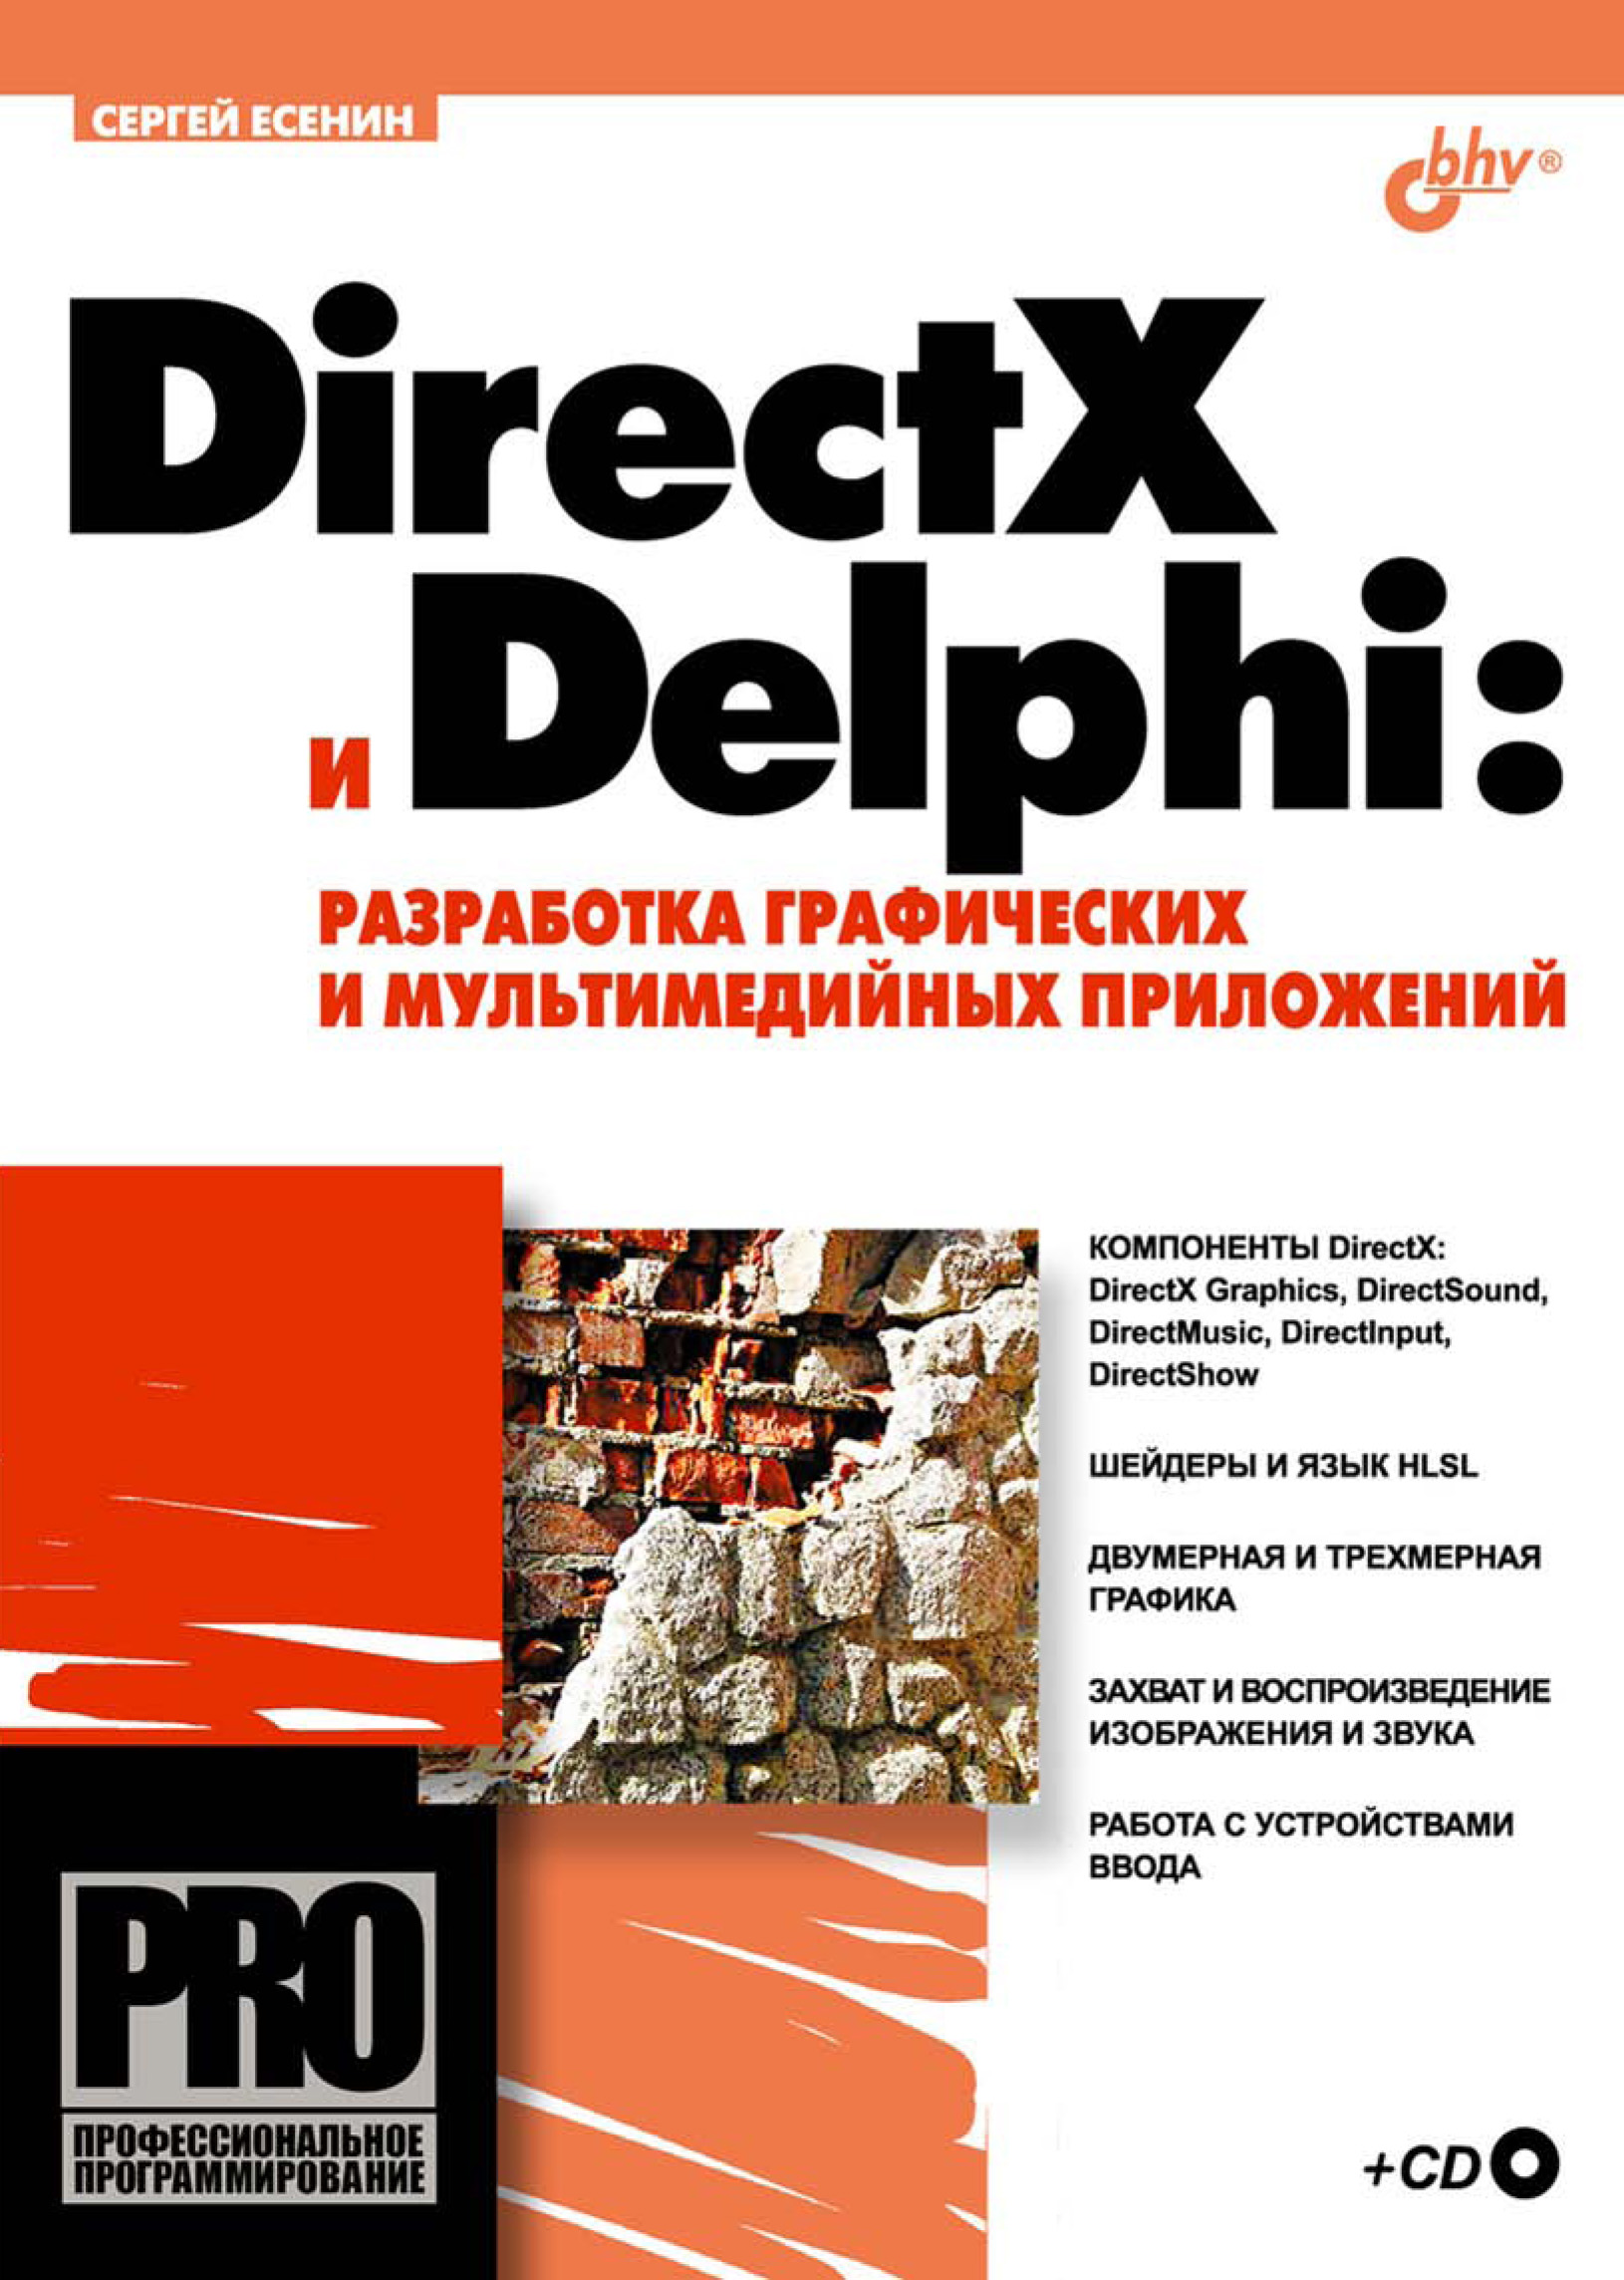 Книга Профессиональное программирование DirectX и Delphi: разработка графических и мультимедийных приложений созданная Сергей Есенин может относится к жанру программирование. Стоимость электронной книги DirectX и Delphi: разработка графических и мультимедийных приложений с идентификатором 6657942 составляет 159.00 руб.